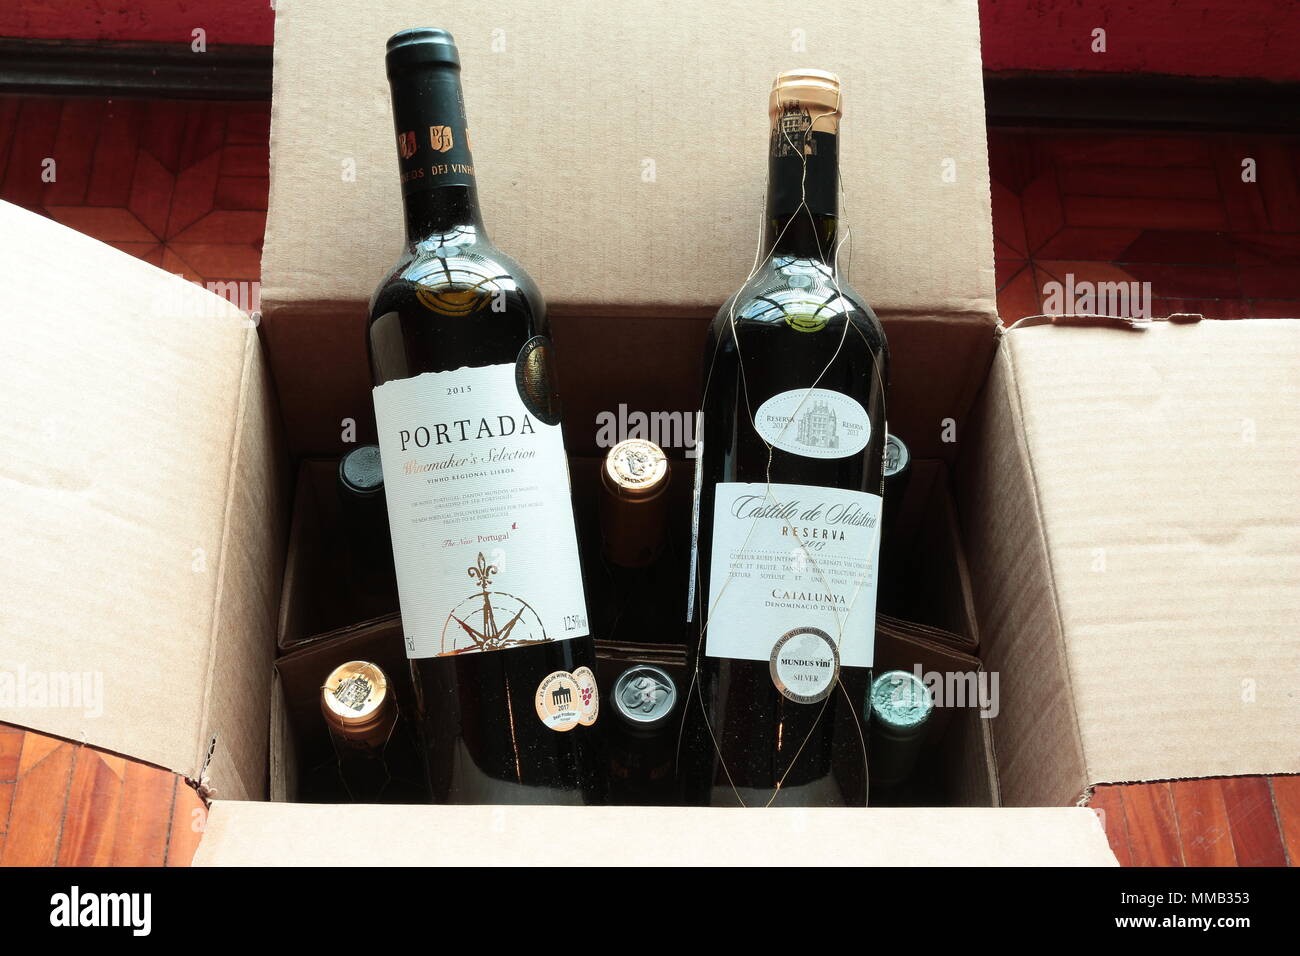 Las botellas de vino en caja de cartón. Etiquetas de botella de vino. Portada vino portugués. Vinos premiados. Entrega del club de vino. Foto de stock